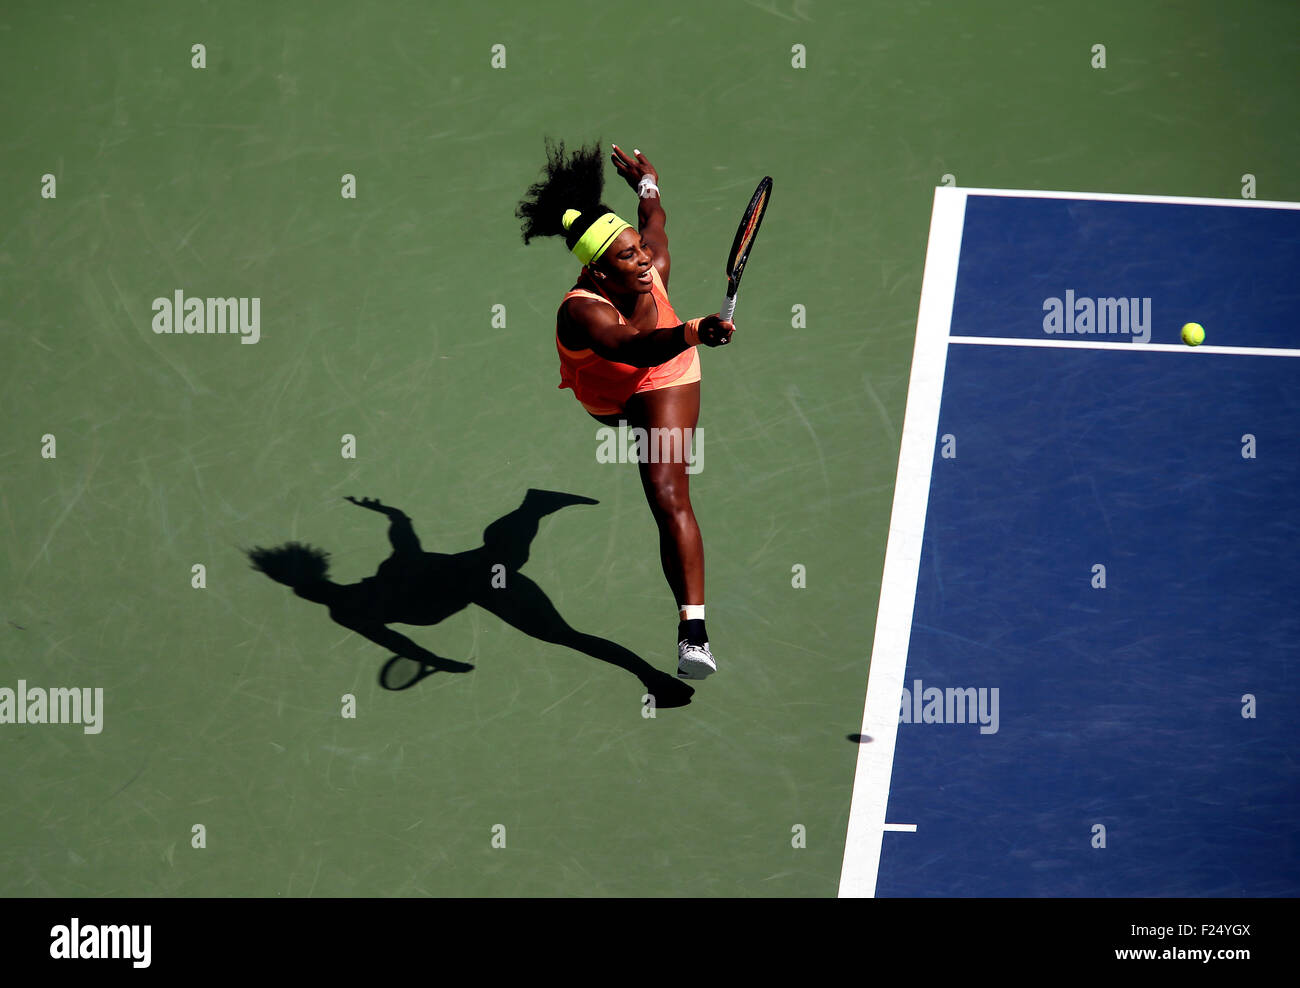 Flushing Meadows, New York, USA. 11. September, 2015. Serena Williams gibt einen Schuss auf Roberta Vinci Italiens in ihrem Halbfinale bei den US Open in Flushing Meadows, New York am Nachmittag des 11. September 2015 zurück.  Vinci gewann das Spiel 2-6, 6-4, 6-4, also Williams-Gebot für ein Grand Slam. Bildnachweis: Adam Stoltman/Alamy Live-Nachrichten Stockfoto